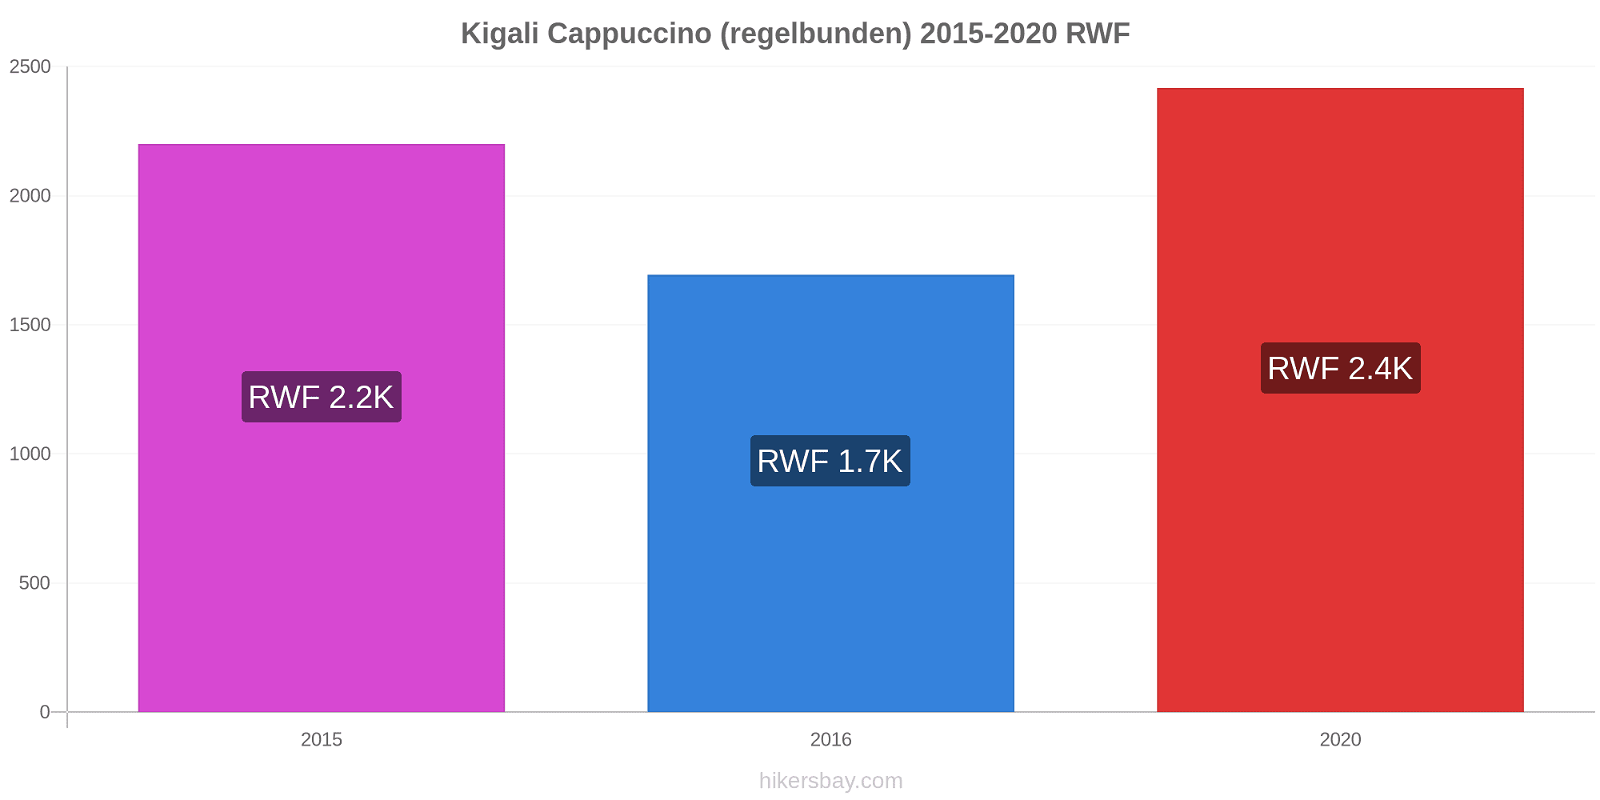 Kigali prisförändringar Cappuccino (regelbunden) hikersbay.com